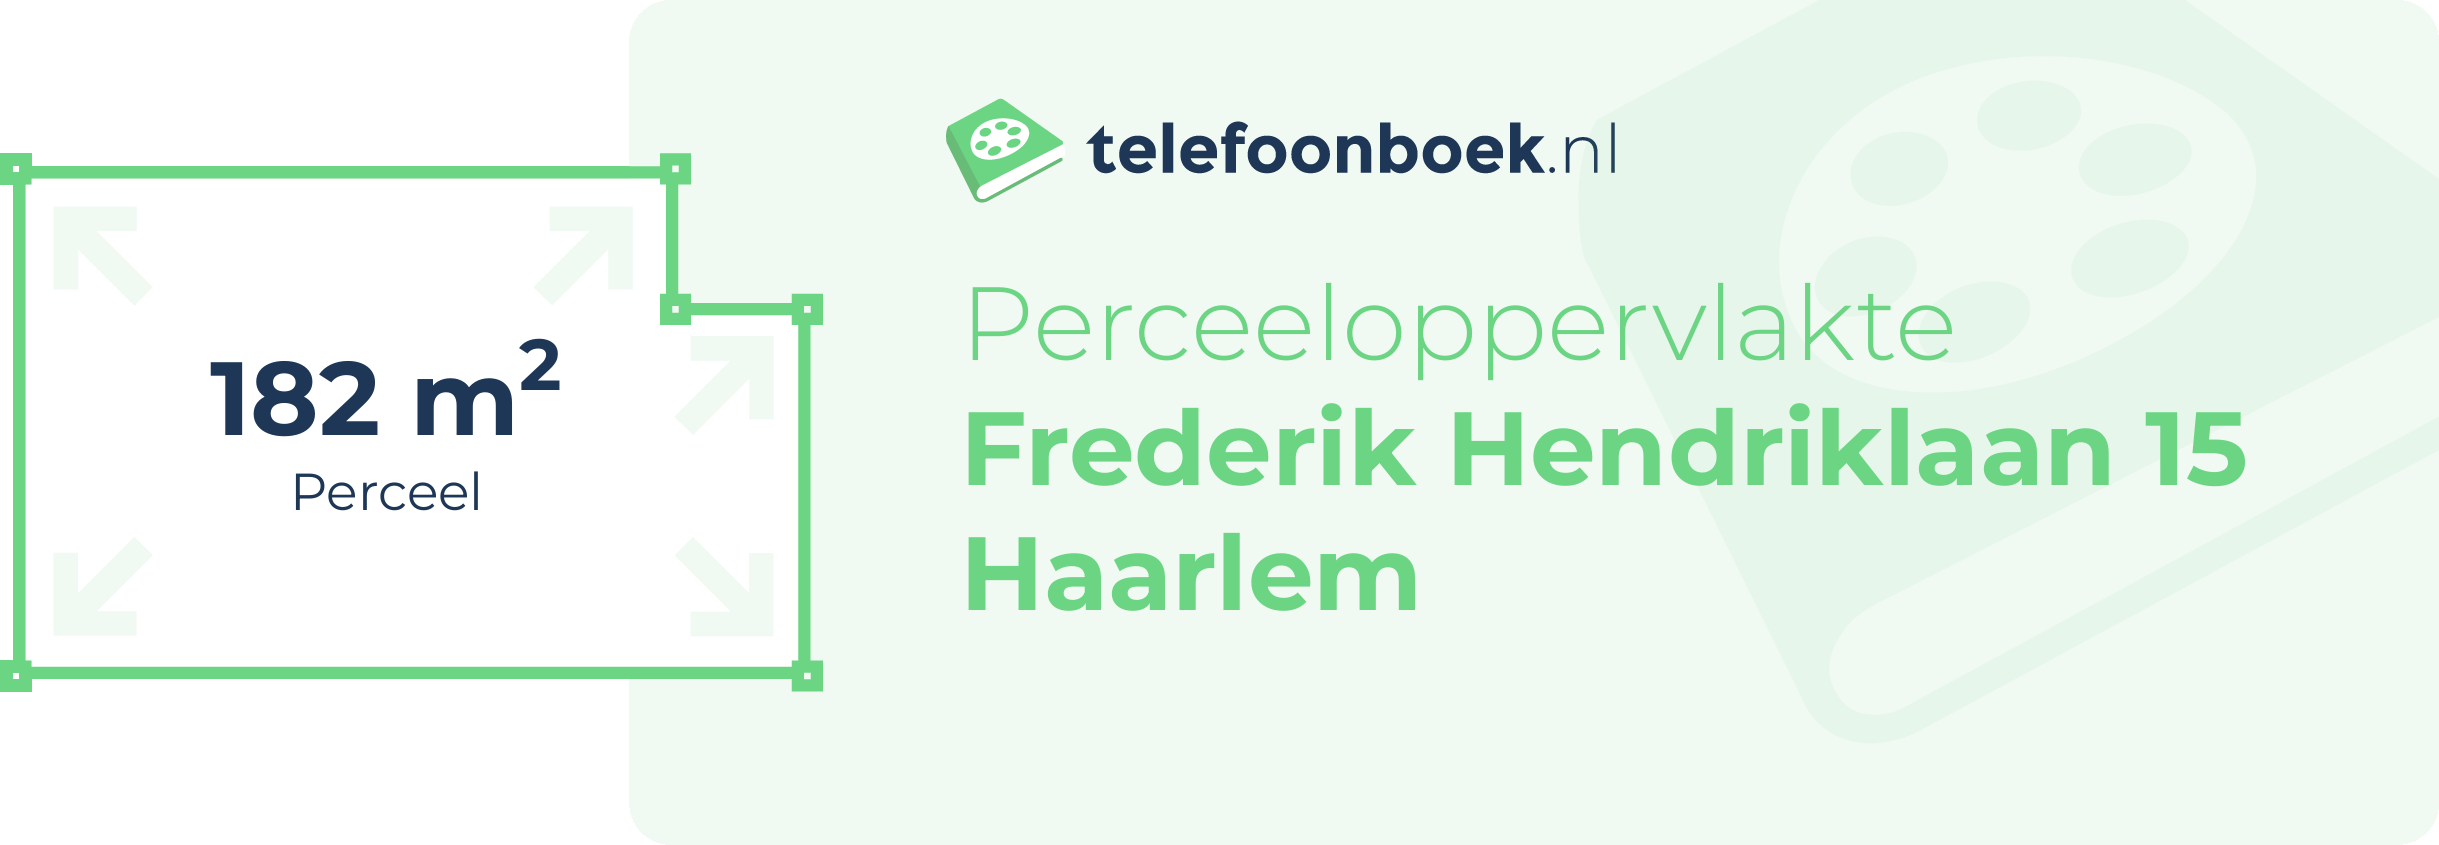 Perceeloppervlakte Frederik Hendriklaan 15 Haarlem